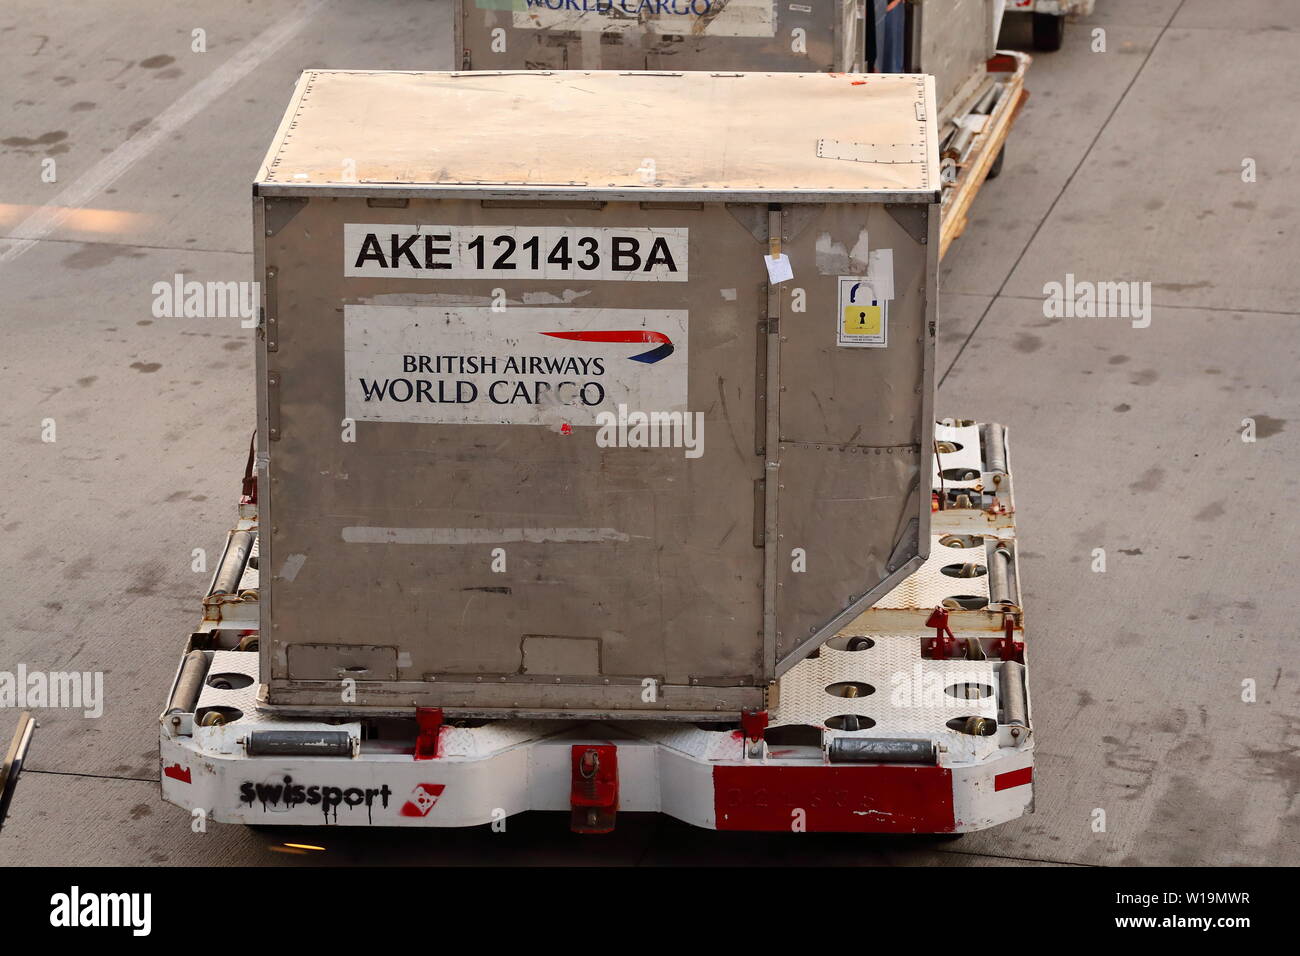 British Airways World Cargo AKE konturierte Behälter auf eine Ebene in Las Vegas, Nevada, USA geladen werden Stockfoto